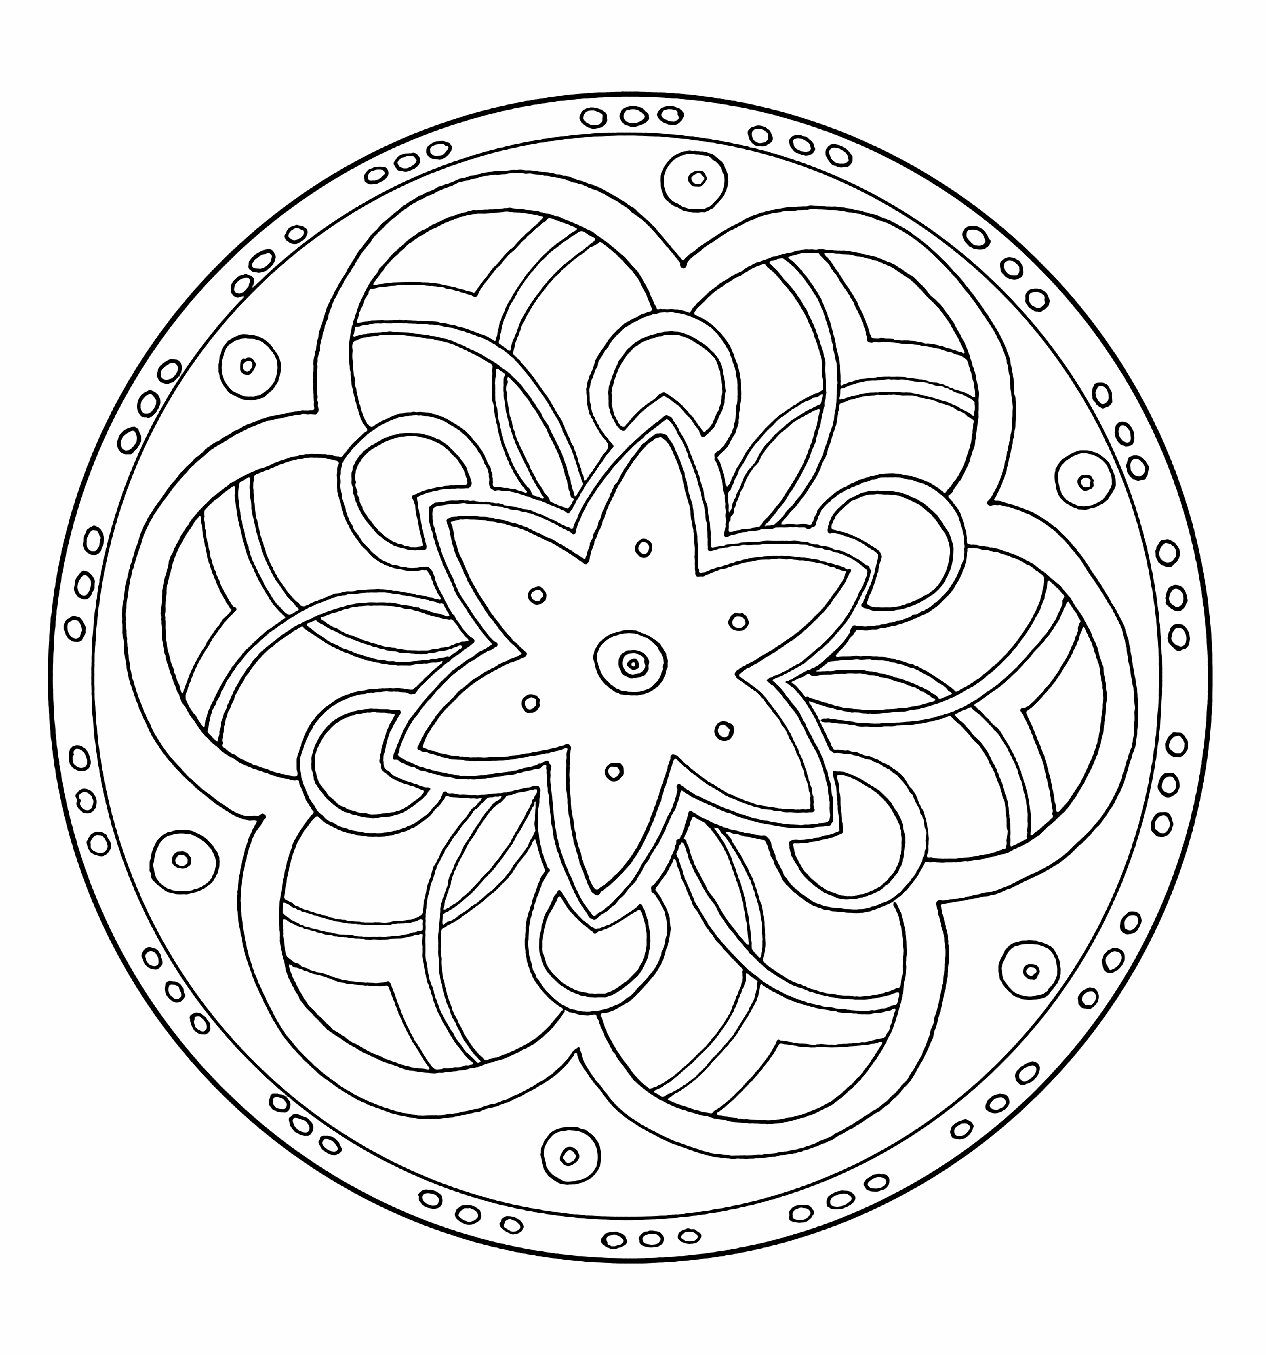 Mandala da colorare con spirali e una bella stella al centro.